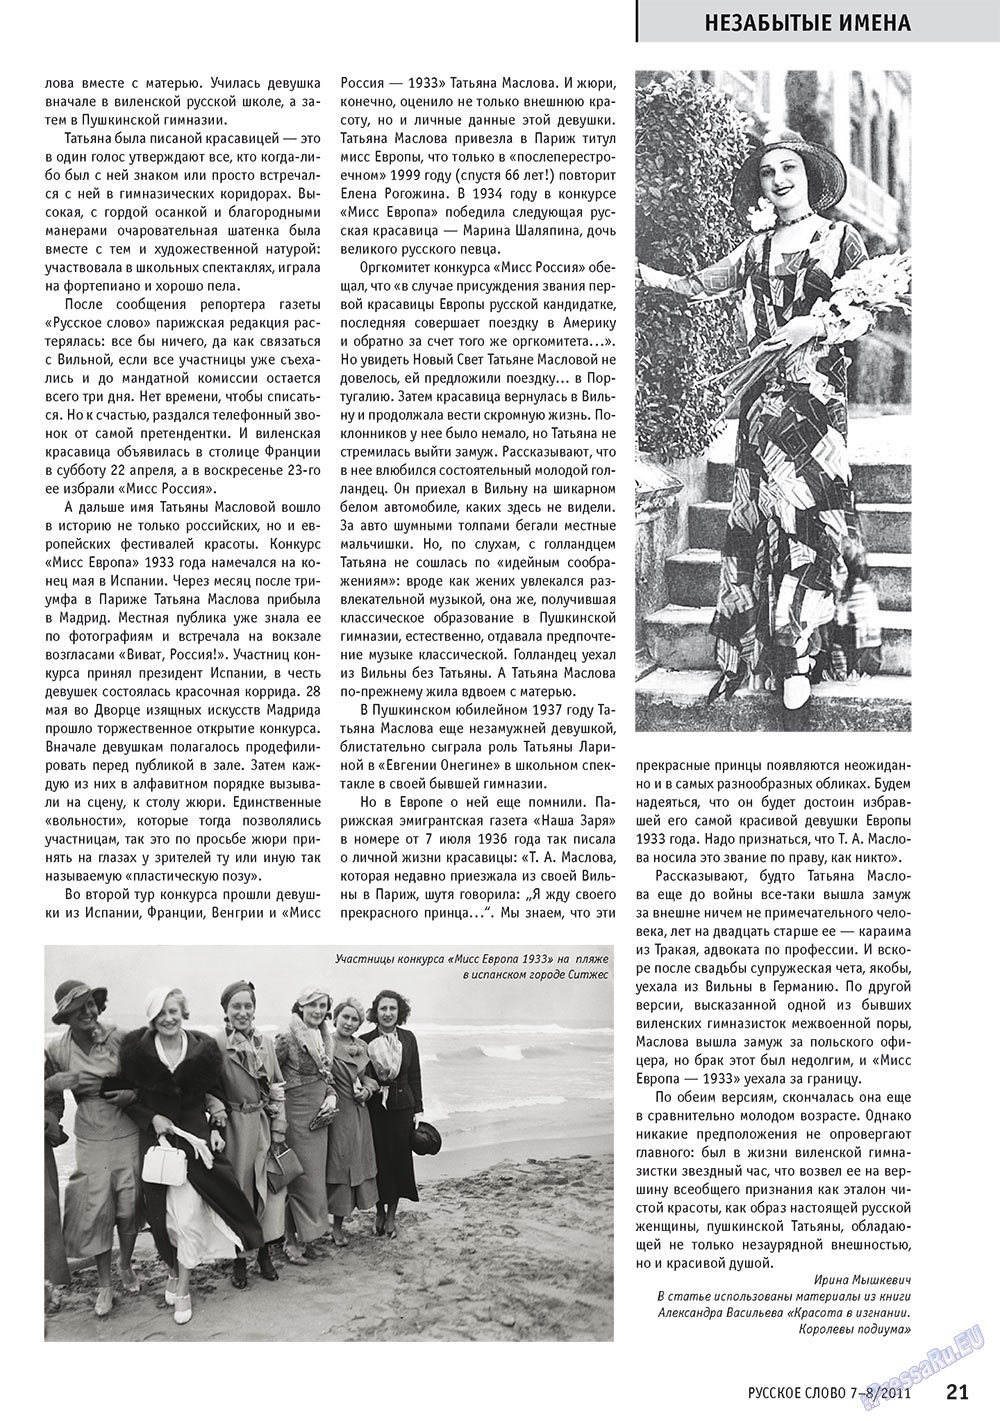 Русское слово, журнал. 2011 №7 стр.23